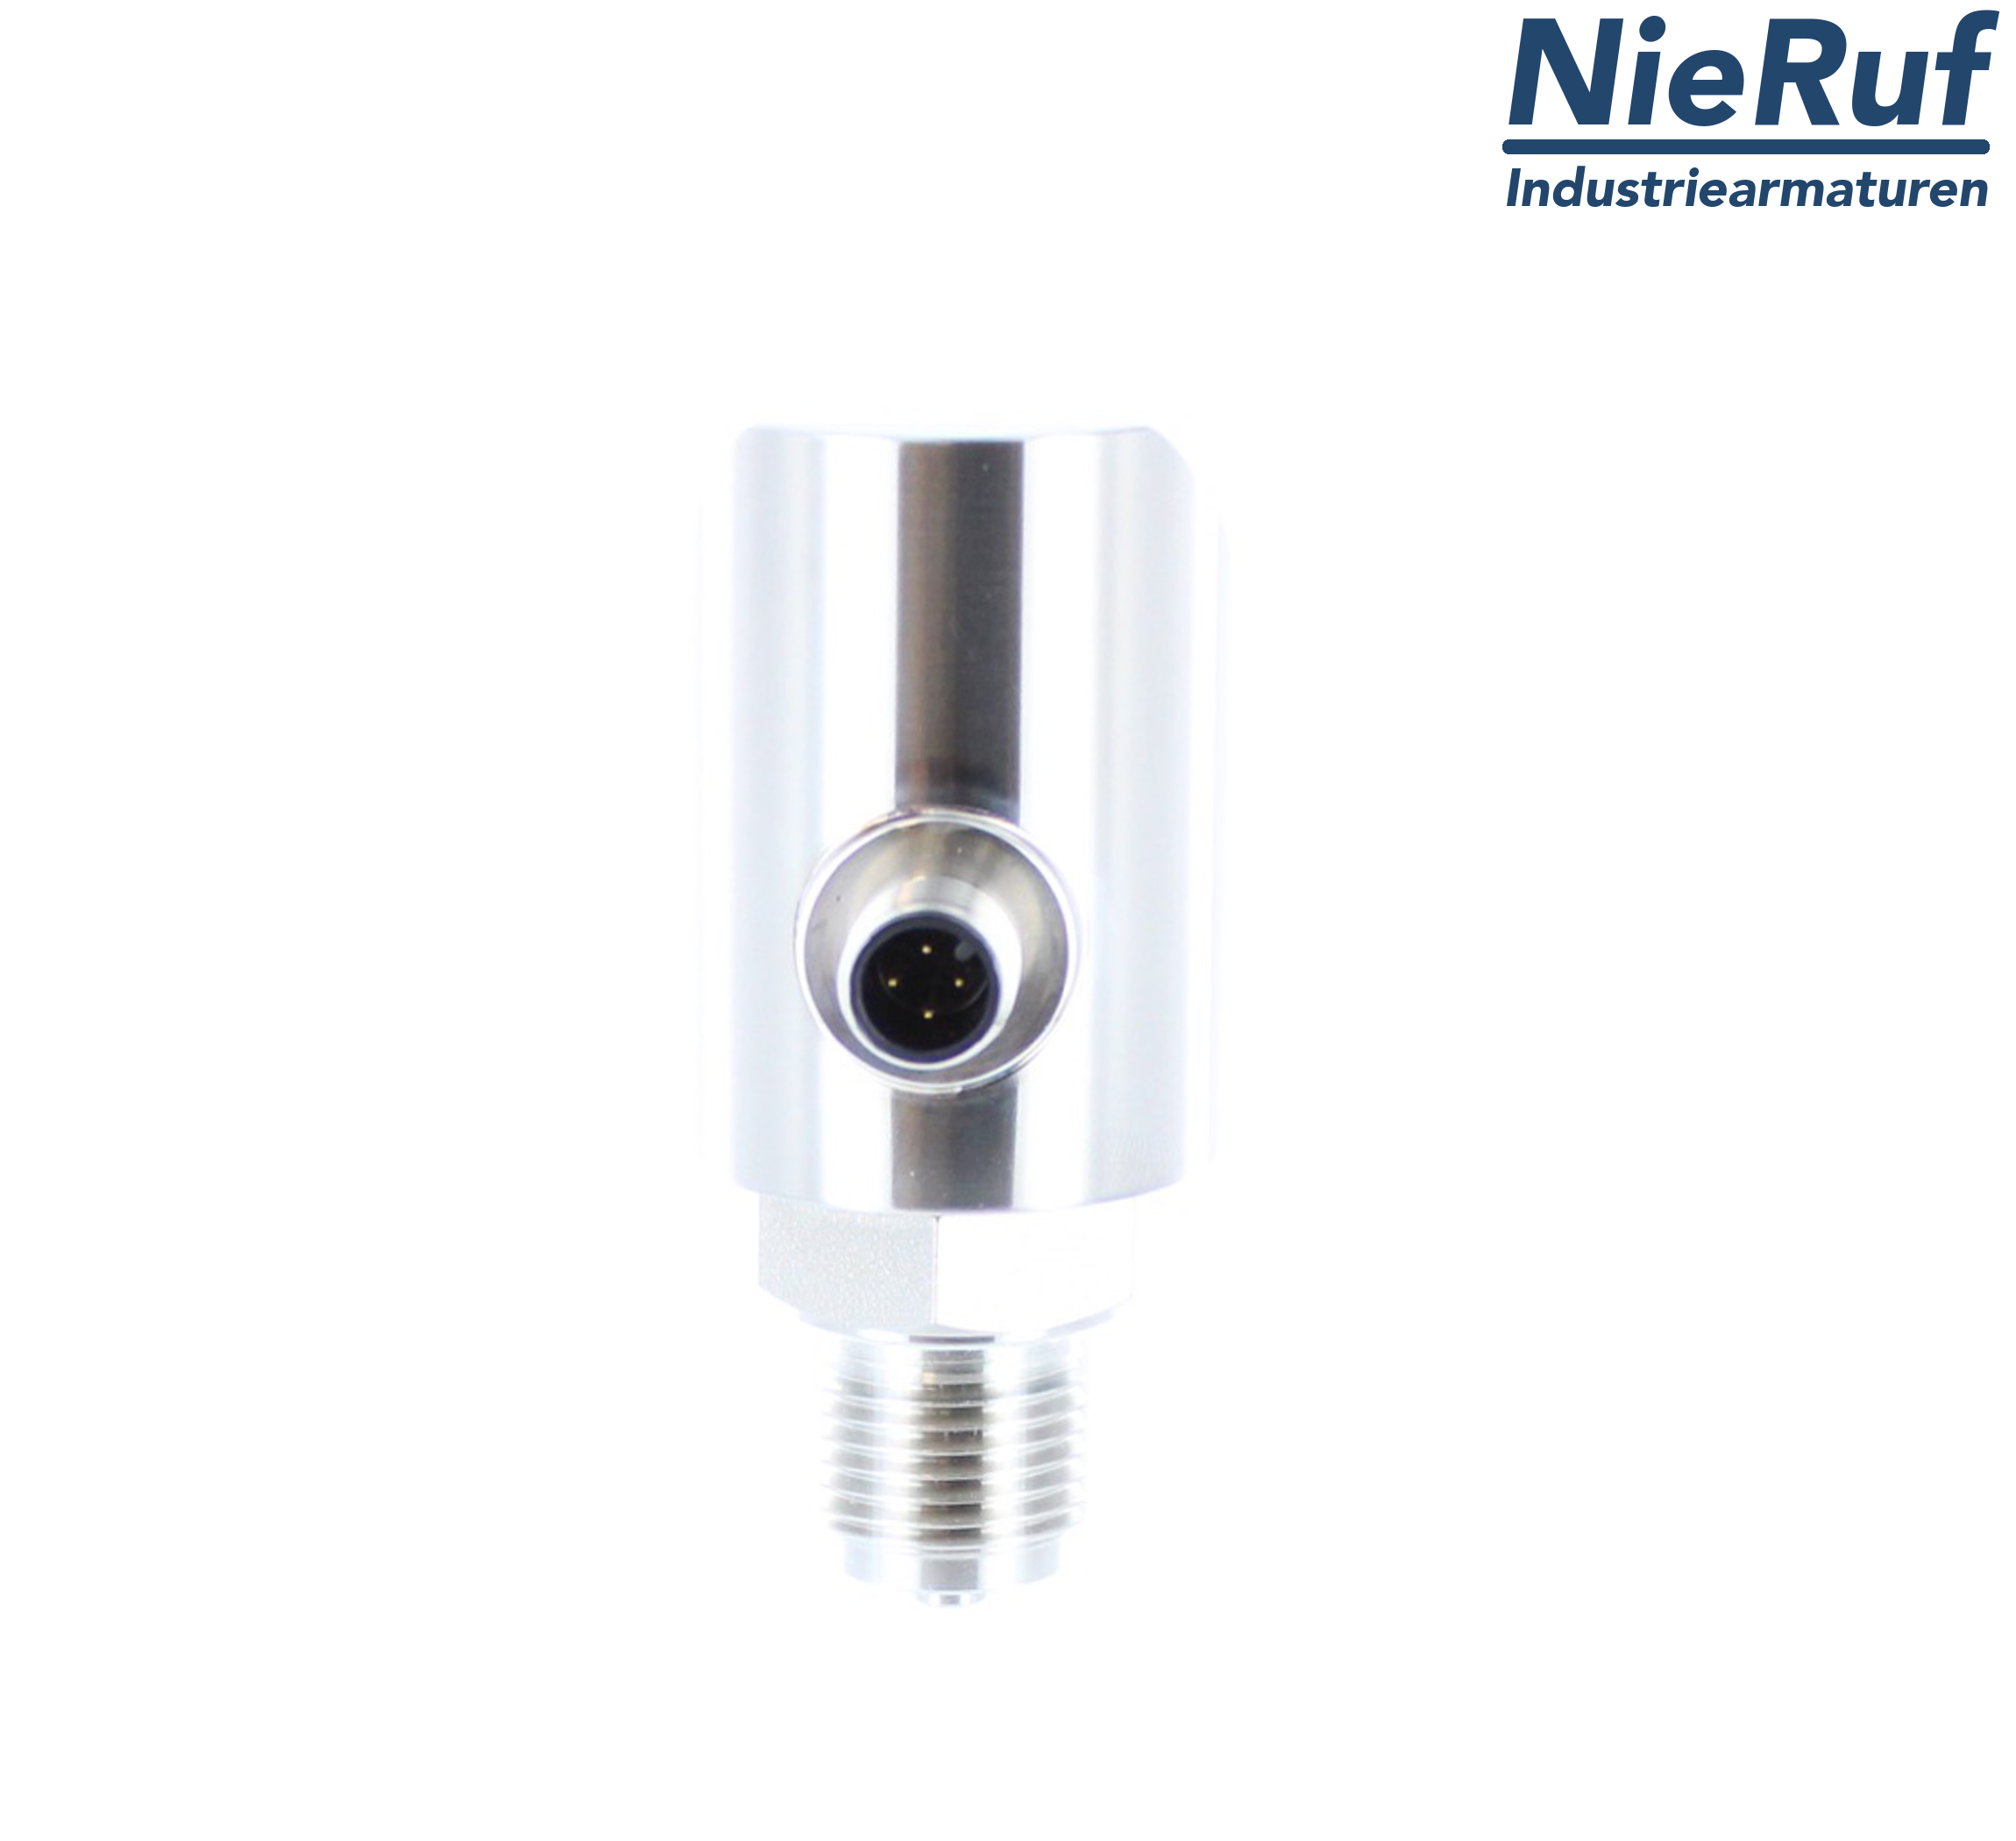 digital pressure sensor G 1/4" B 4-wire: 1xPNP, 1x4 - 20mA, Desina FPM 0,0 - 400,0 bar